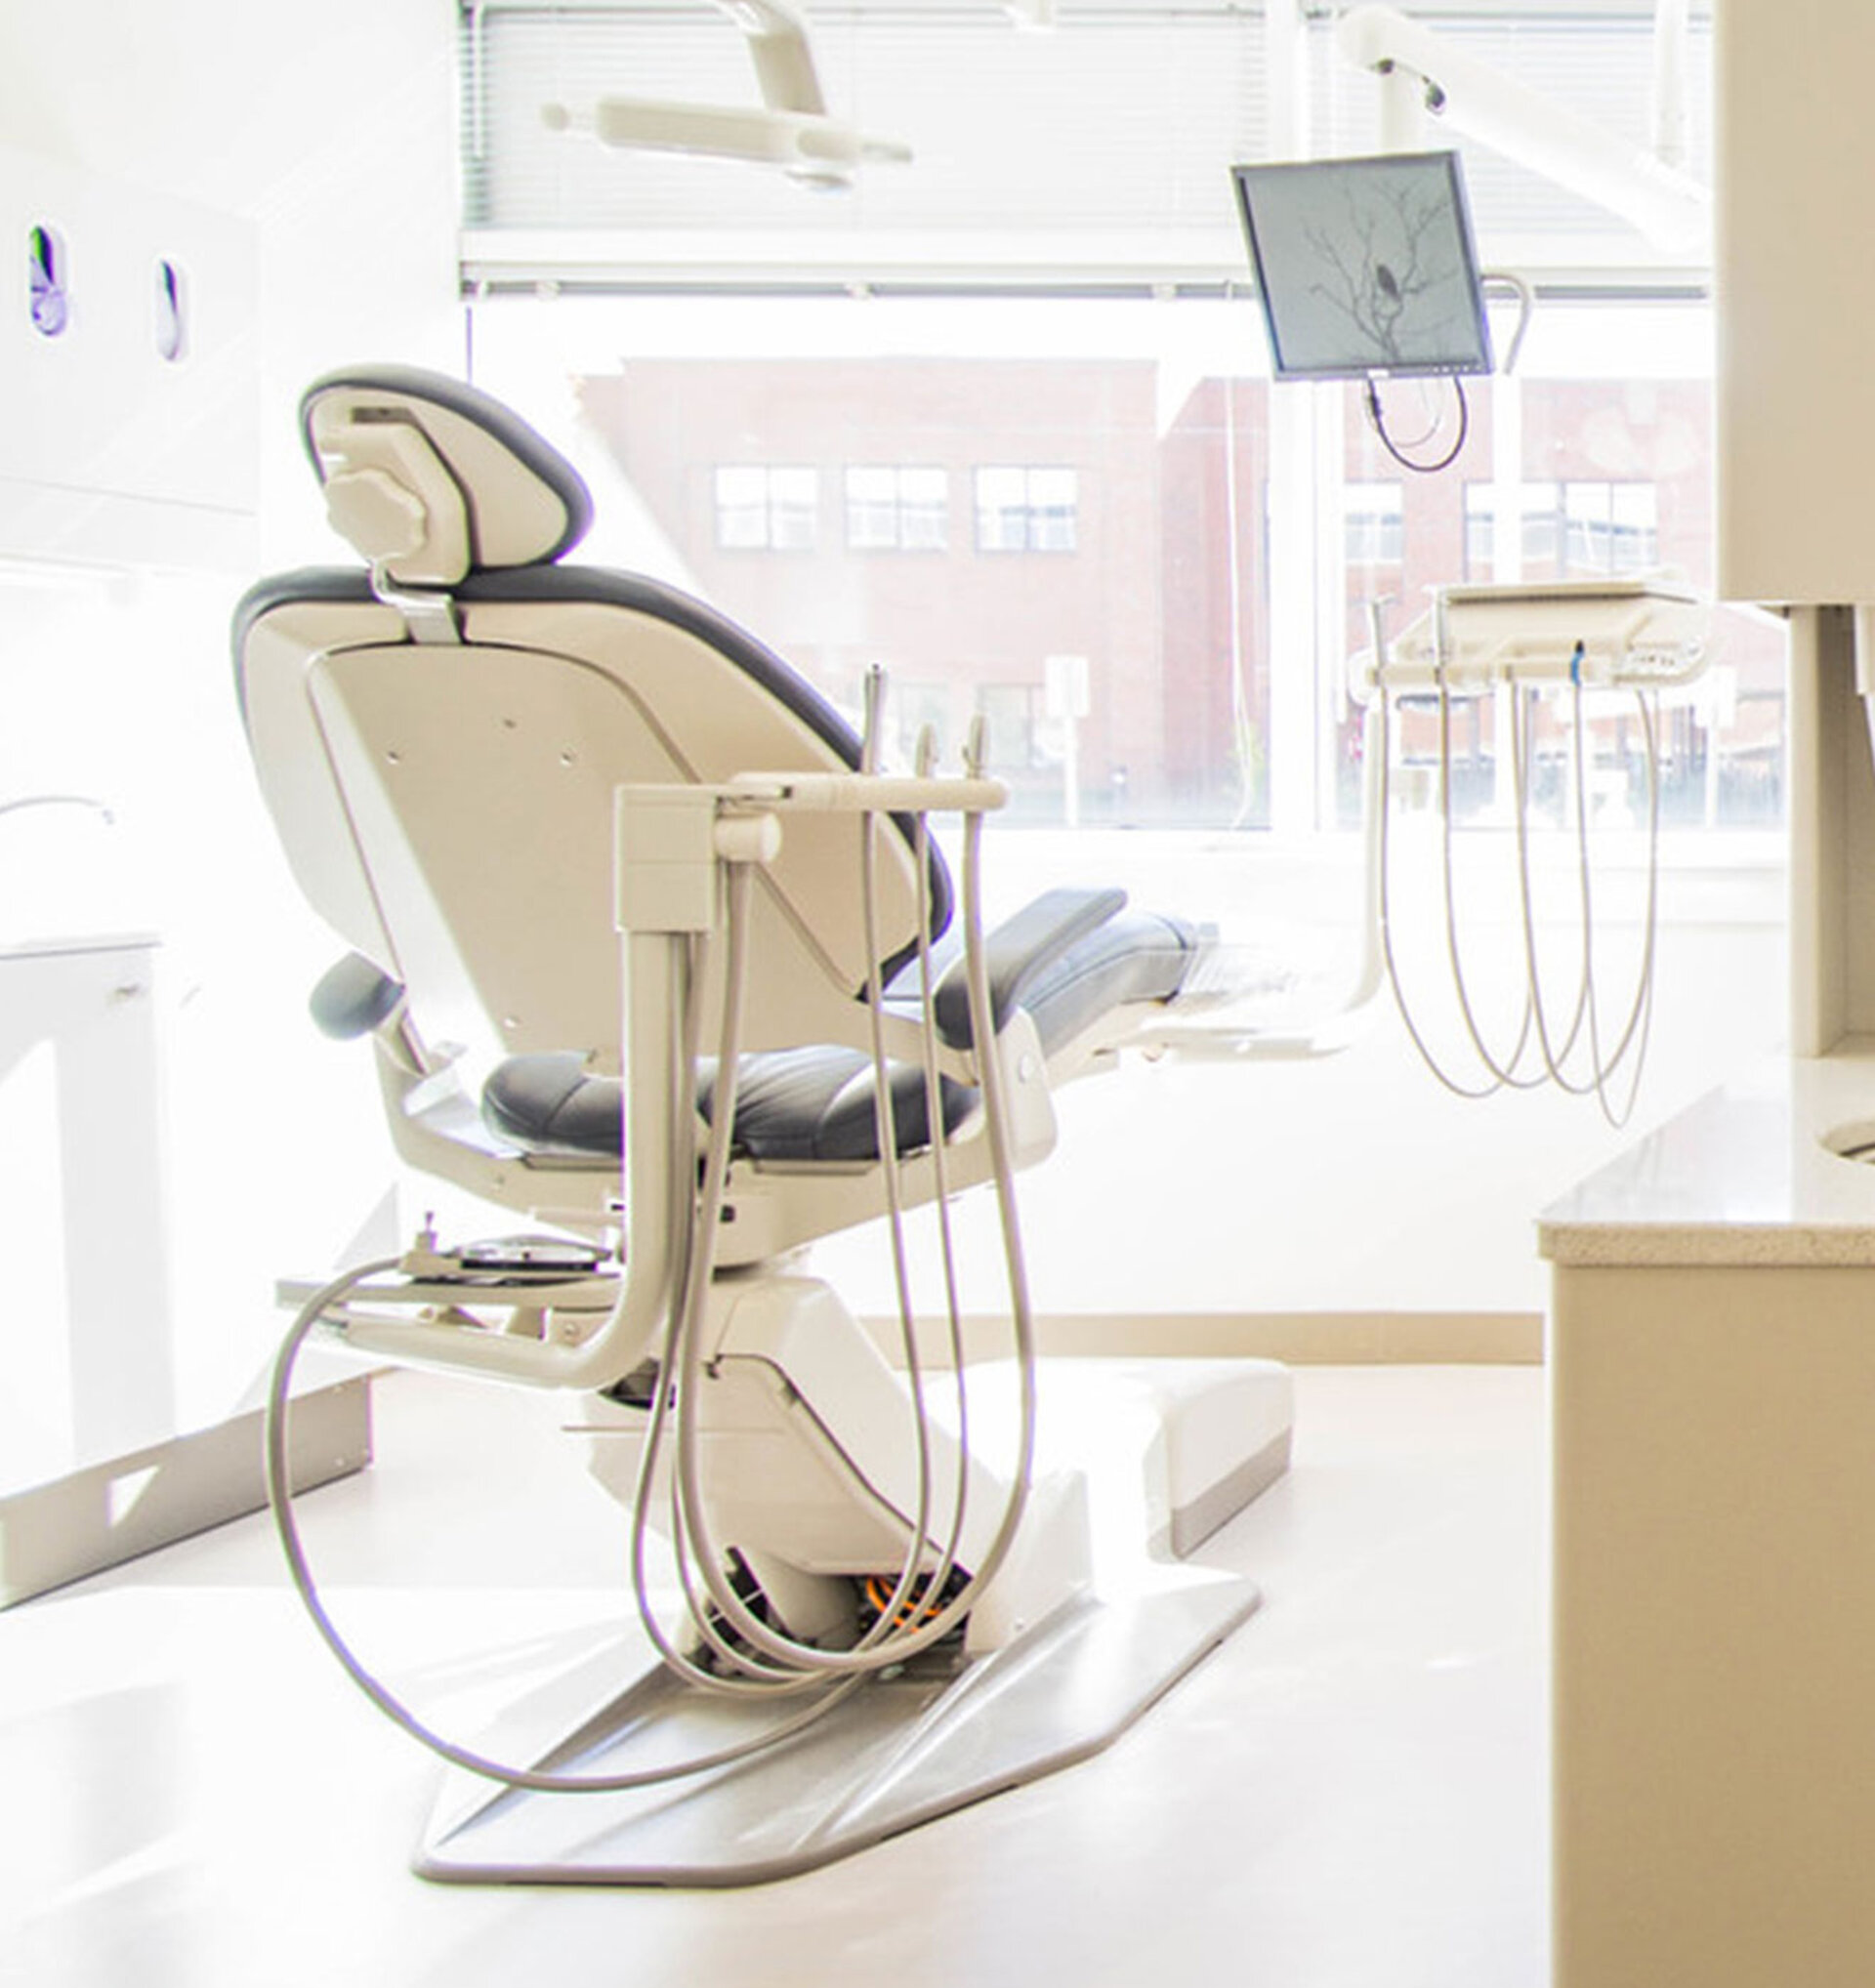 Danmarks största leverantör av utrustning, IT och utbildningar för tandläkarkliniker, Plandent, hämtar nu hem den största delen av deras omsättning över internet